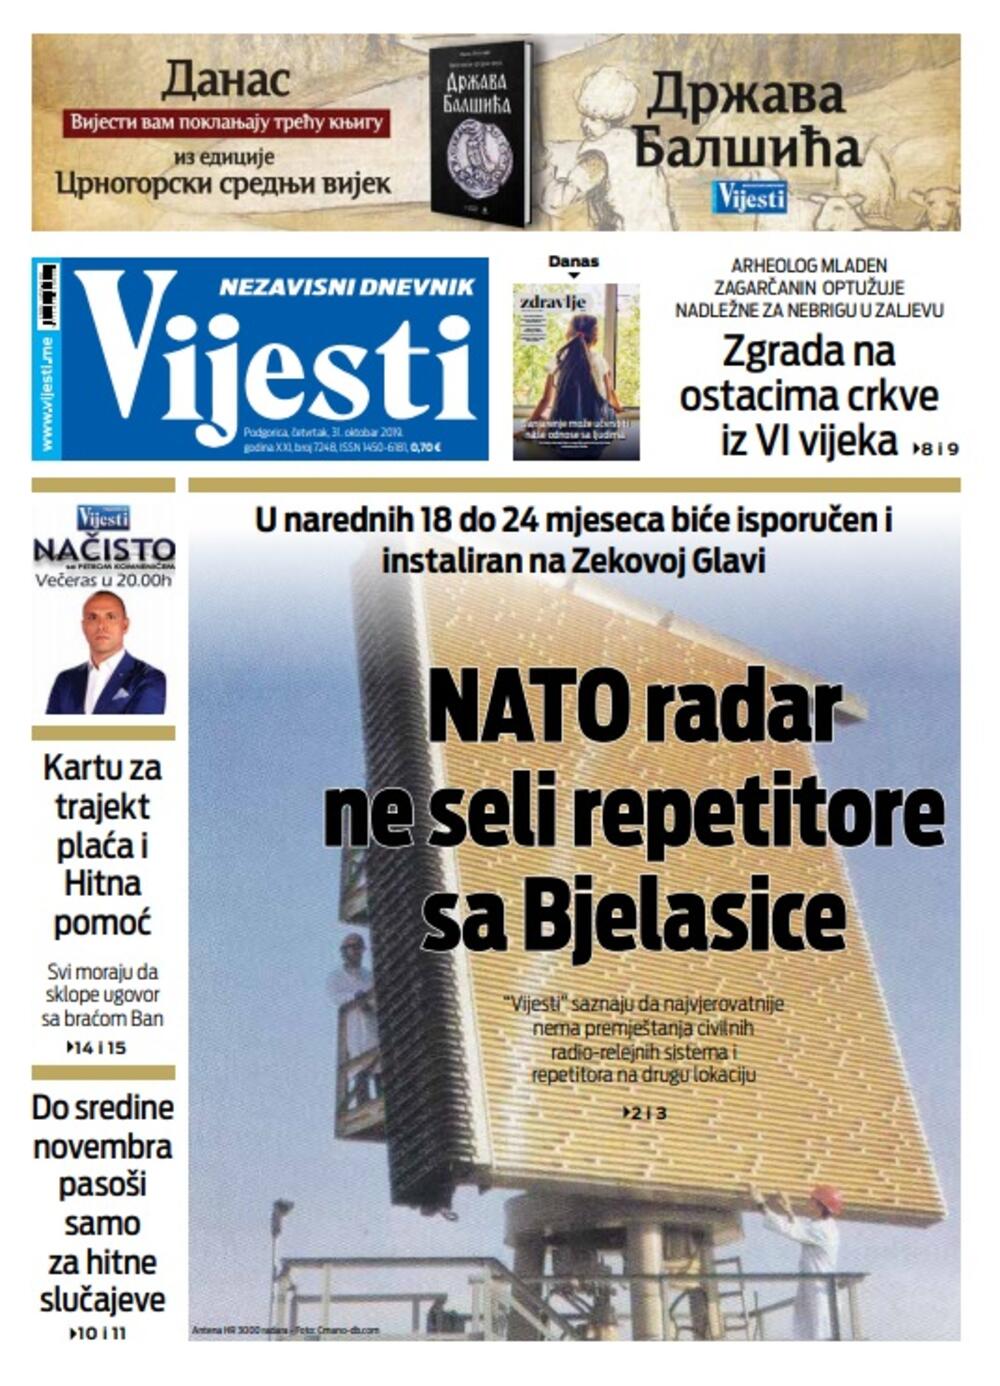 Naslovna strana "Vijesti" za 31. oktobar, Foto: Vijesti